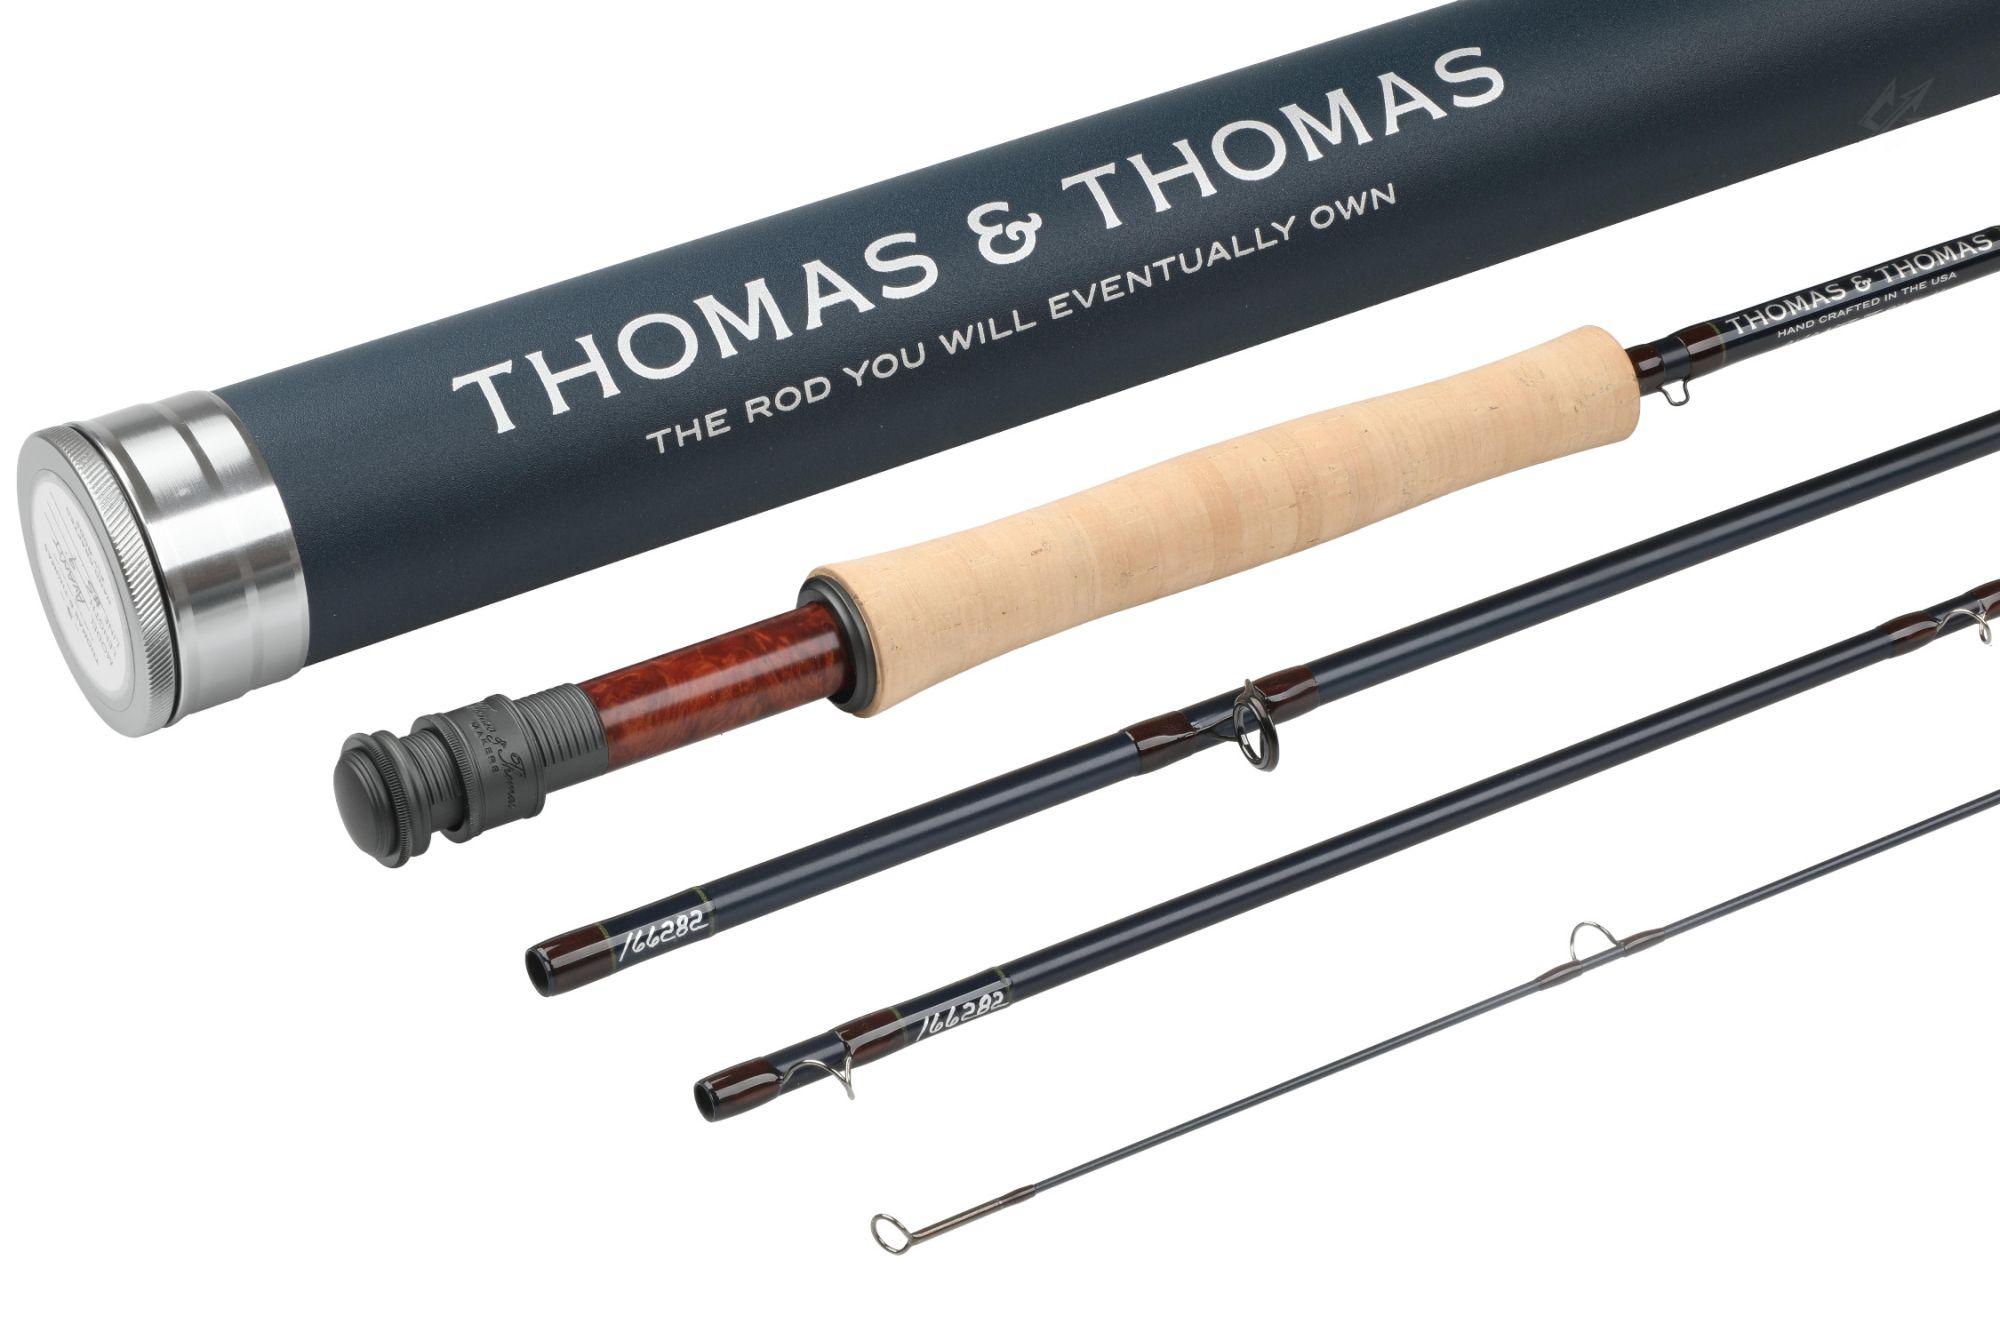 Thomas and Thomas Avantt II Fly Rod